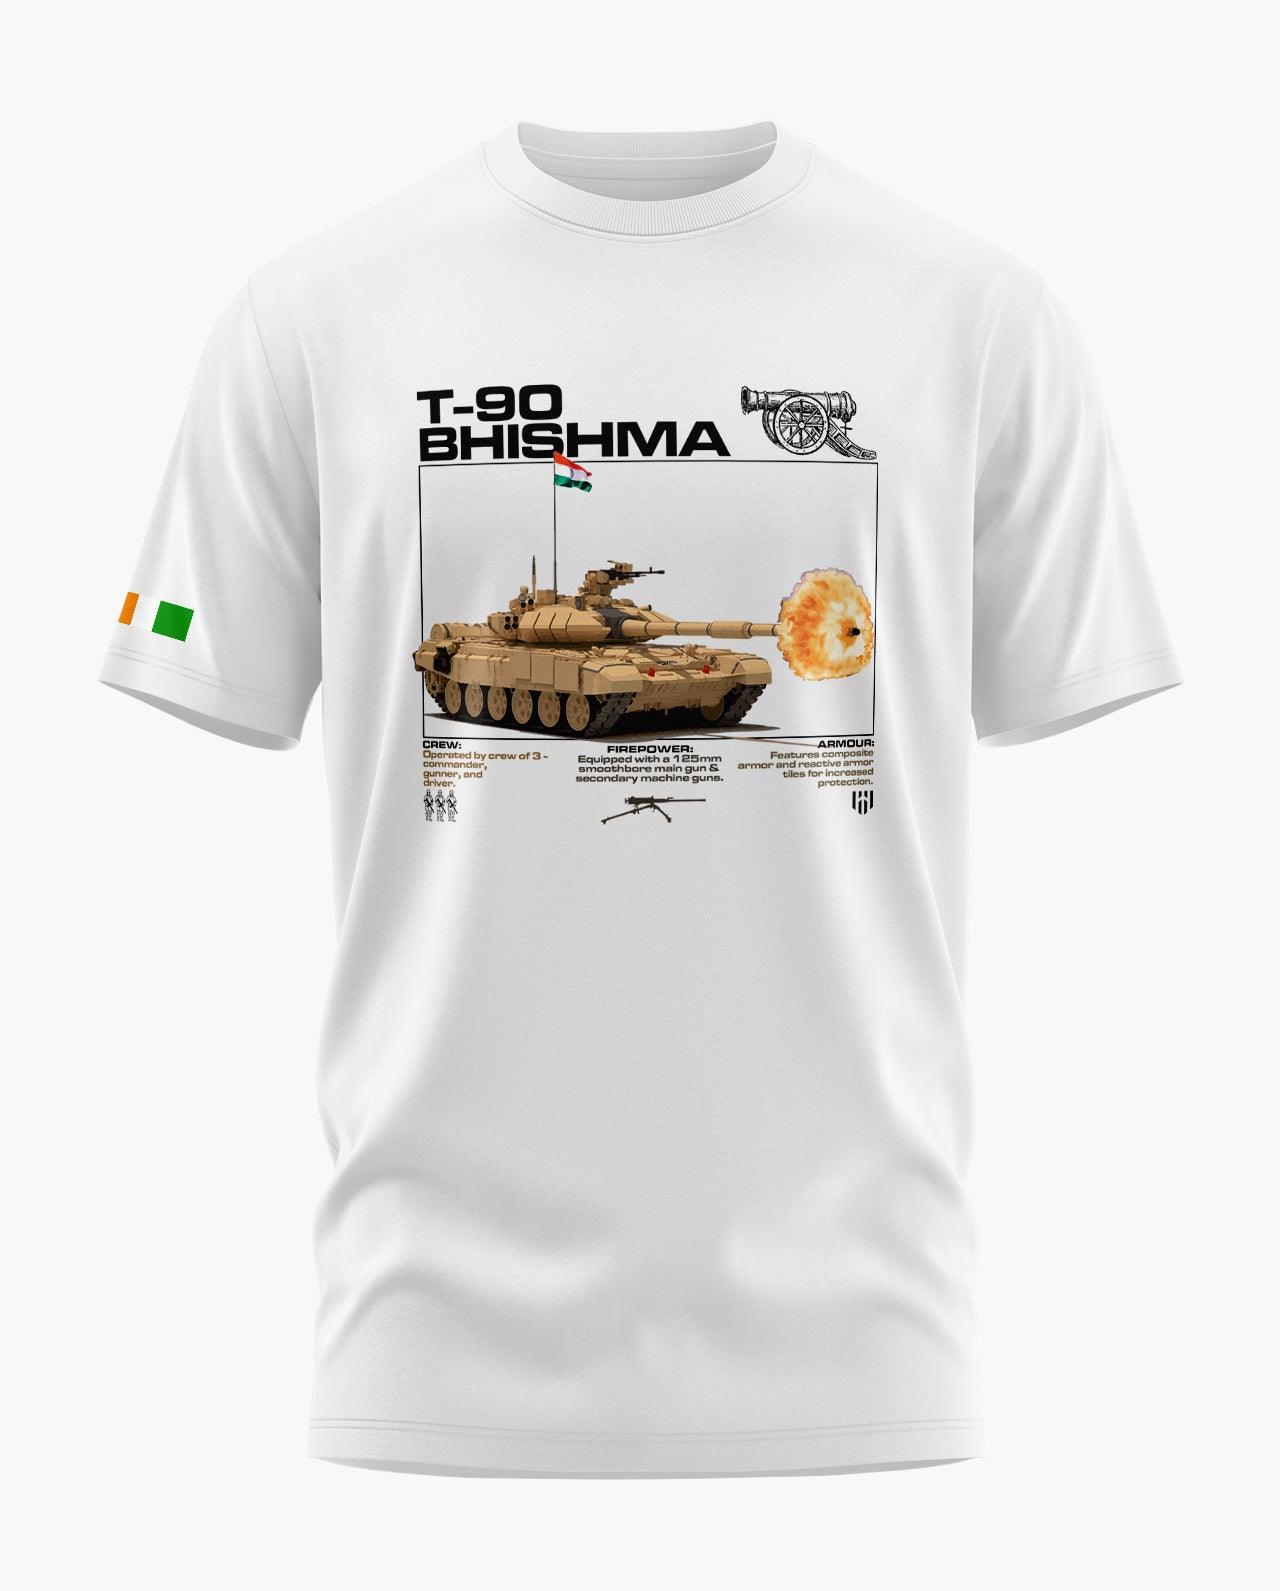 T-90 Bhishma Combat T-Shirt - Aero Armour